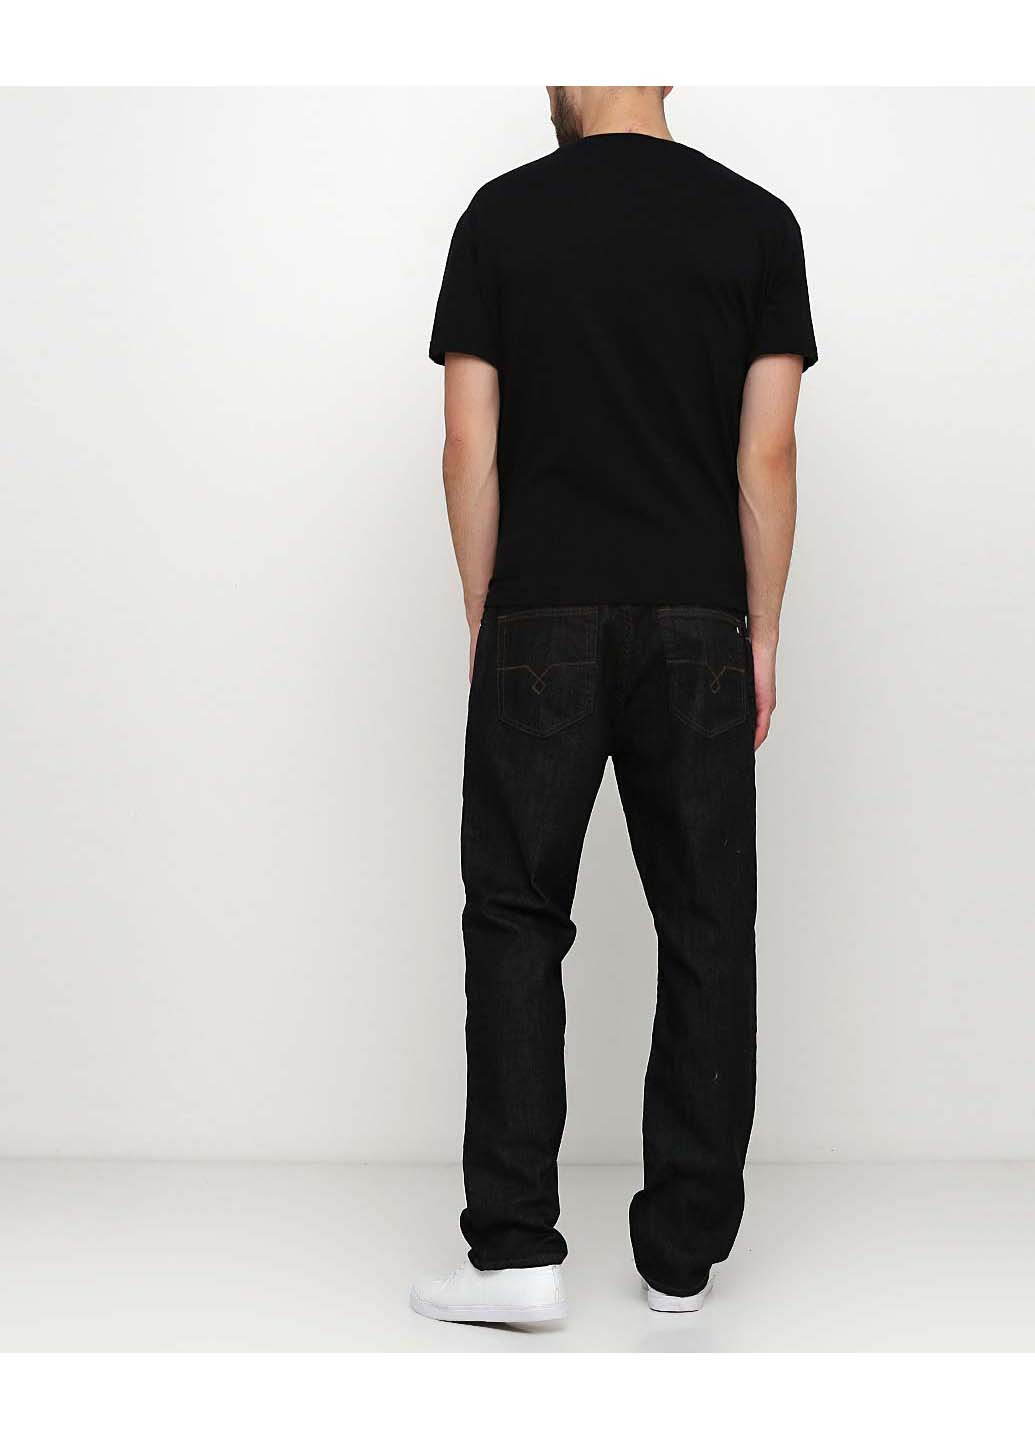 Черные регюлар фит джинсы PC-12-001 Pierre Cardin